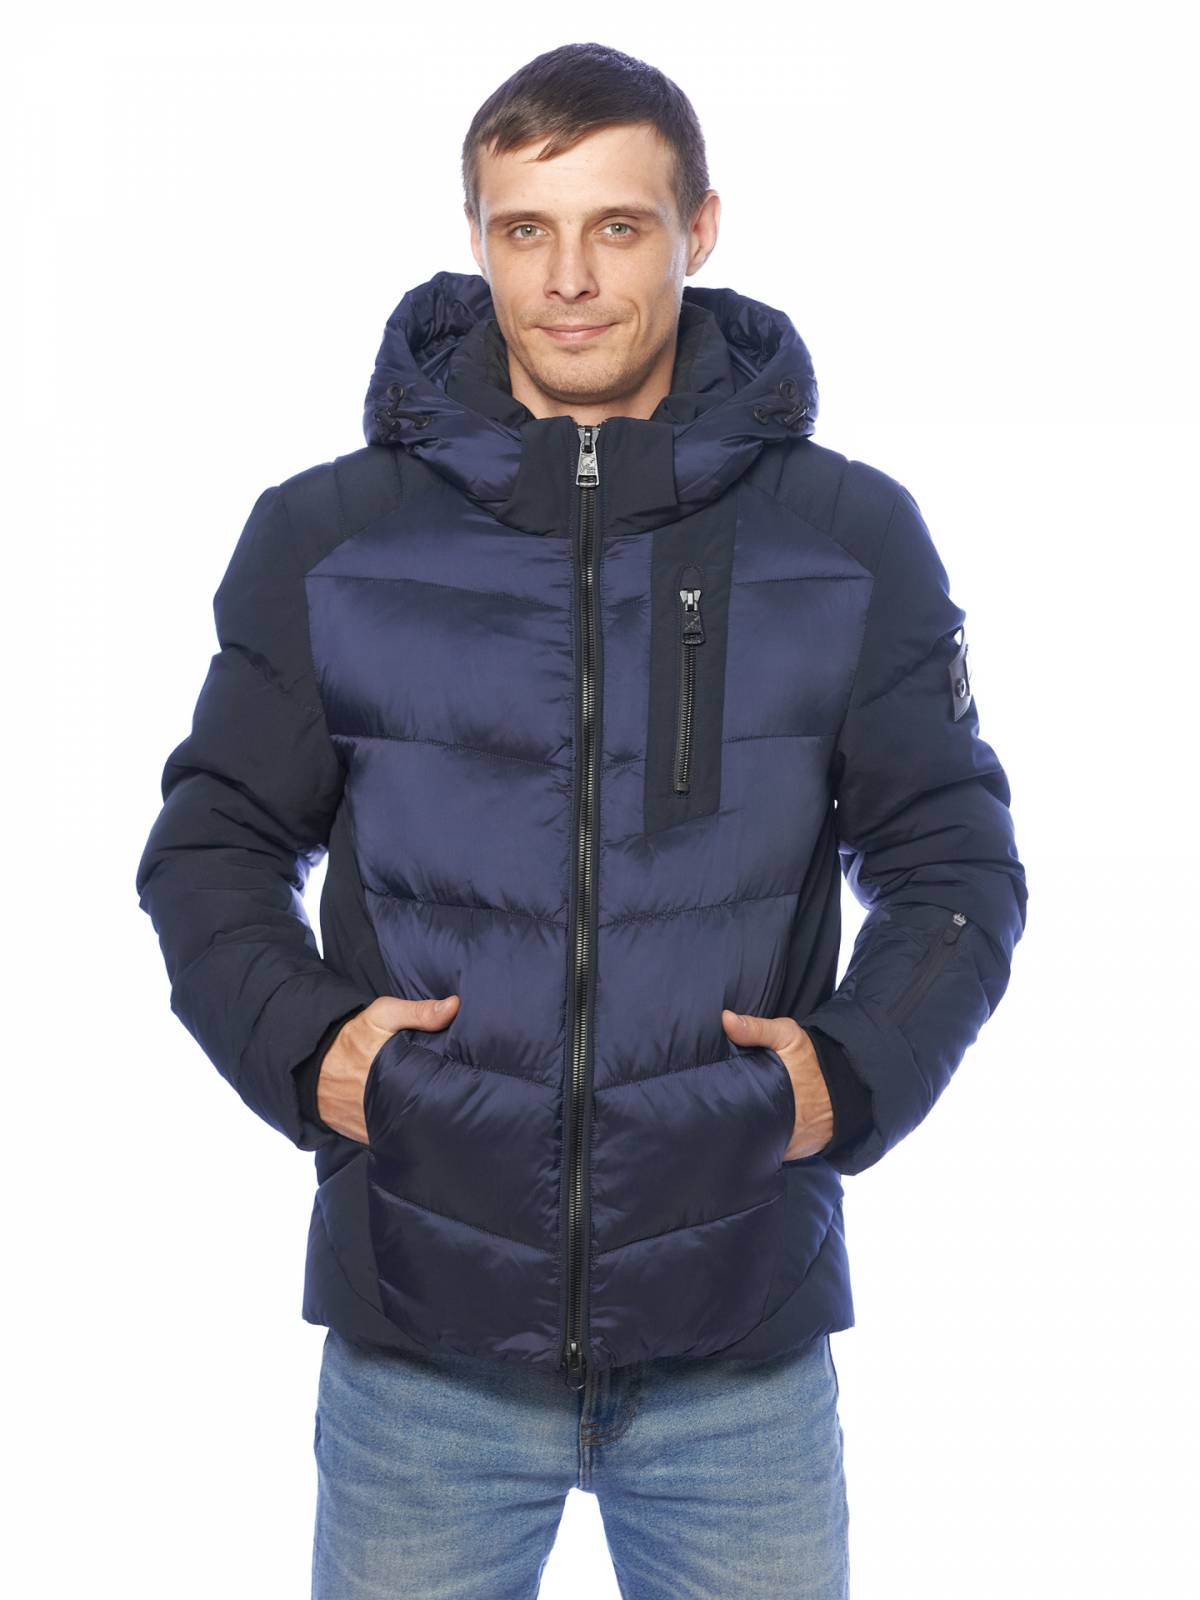 Зимняя куртка мужская Clasna 3776 синяя 48 RU